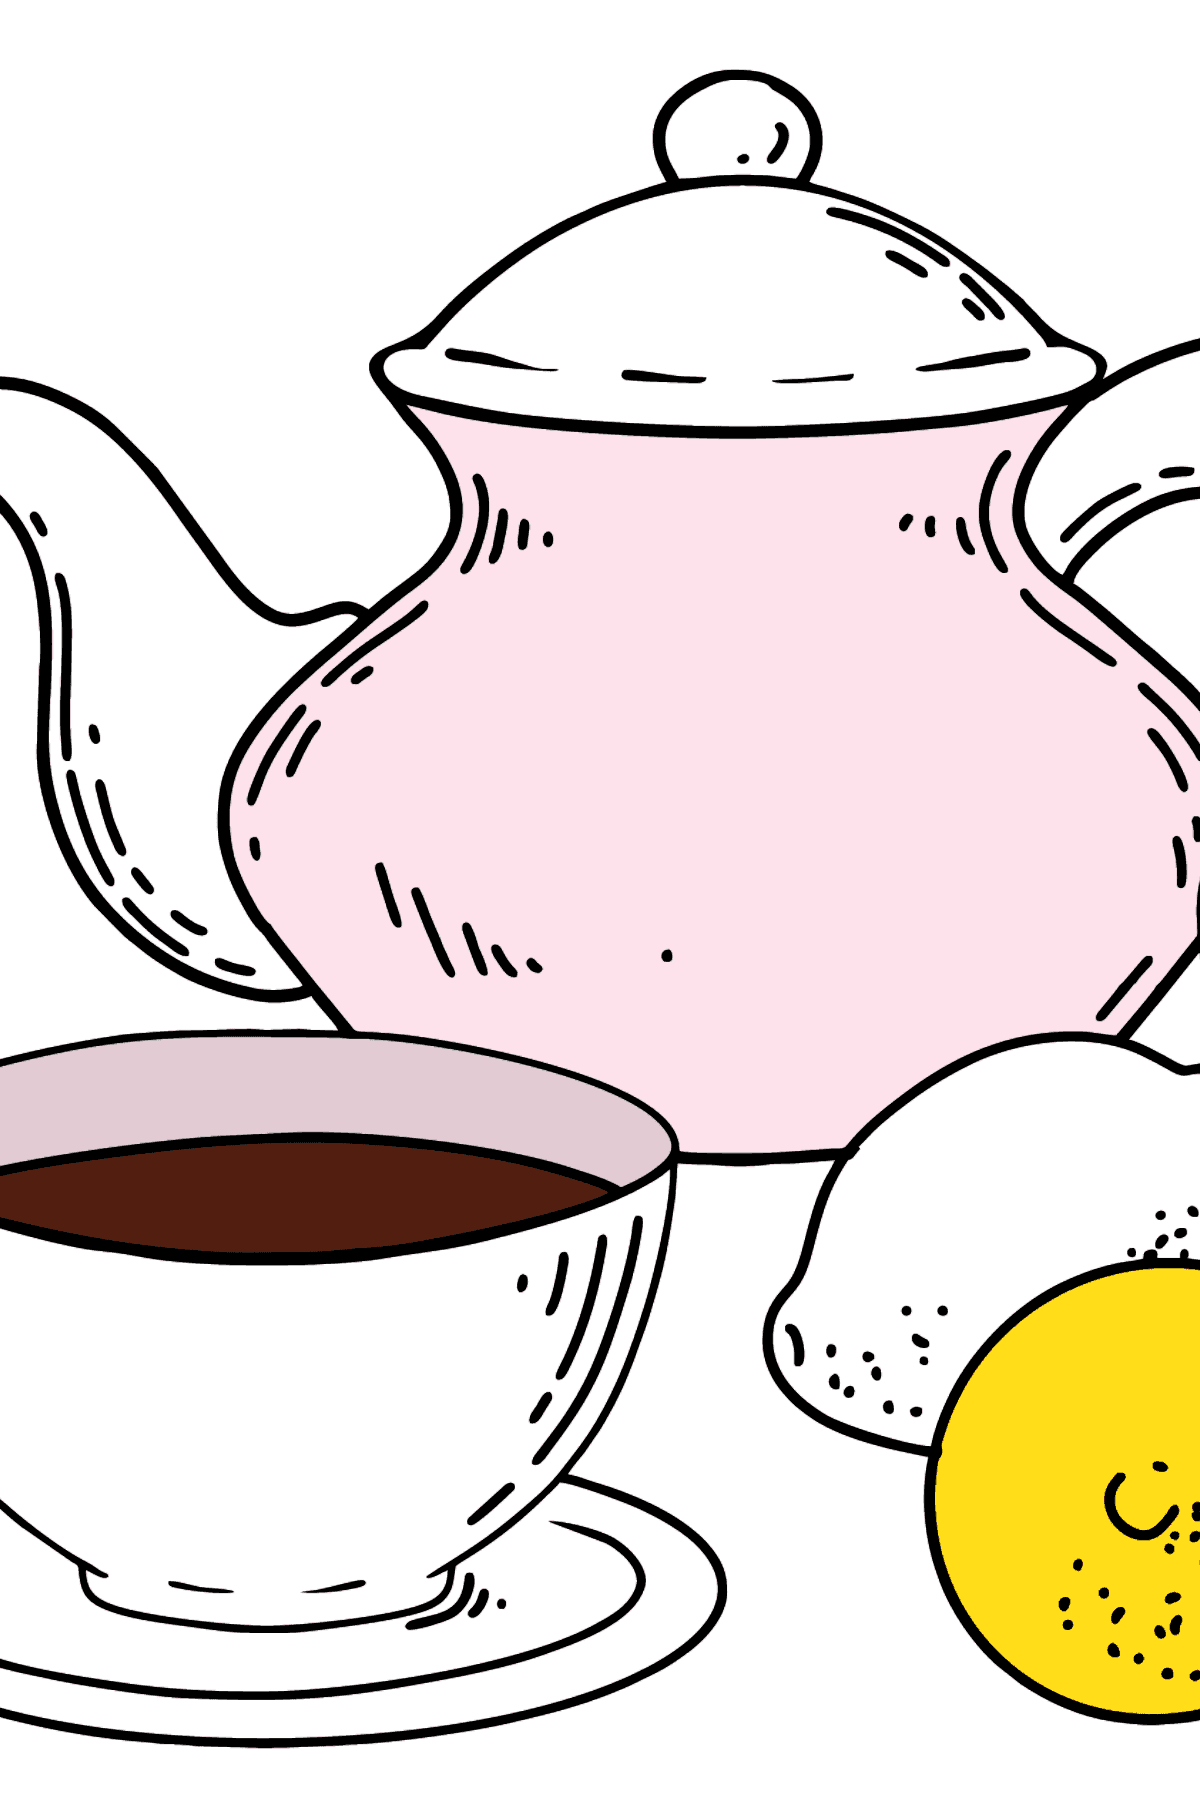 Desenho para colorir de xícara de chá e bule - Imagens para Colorir para Crianças